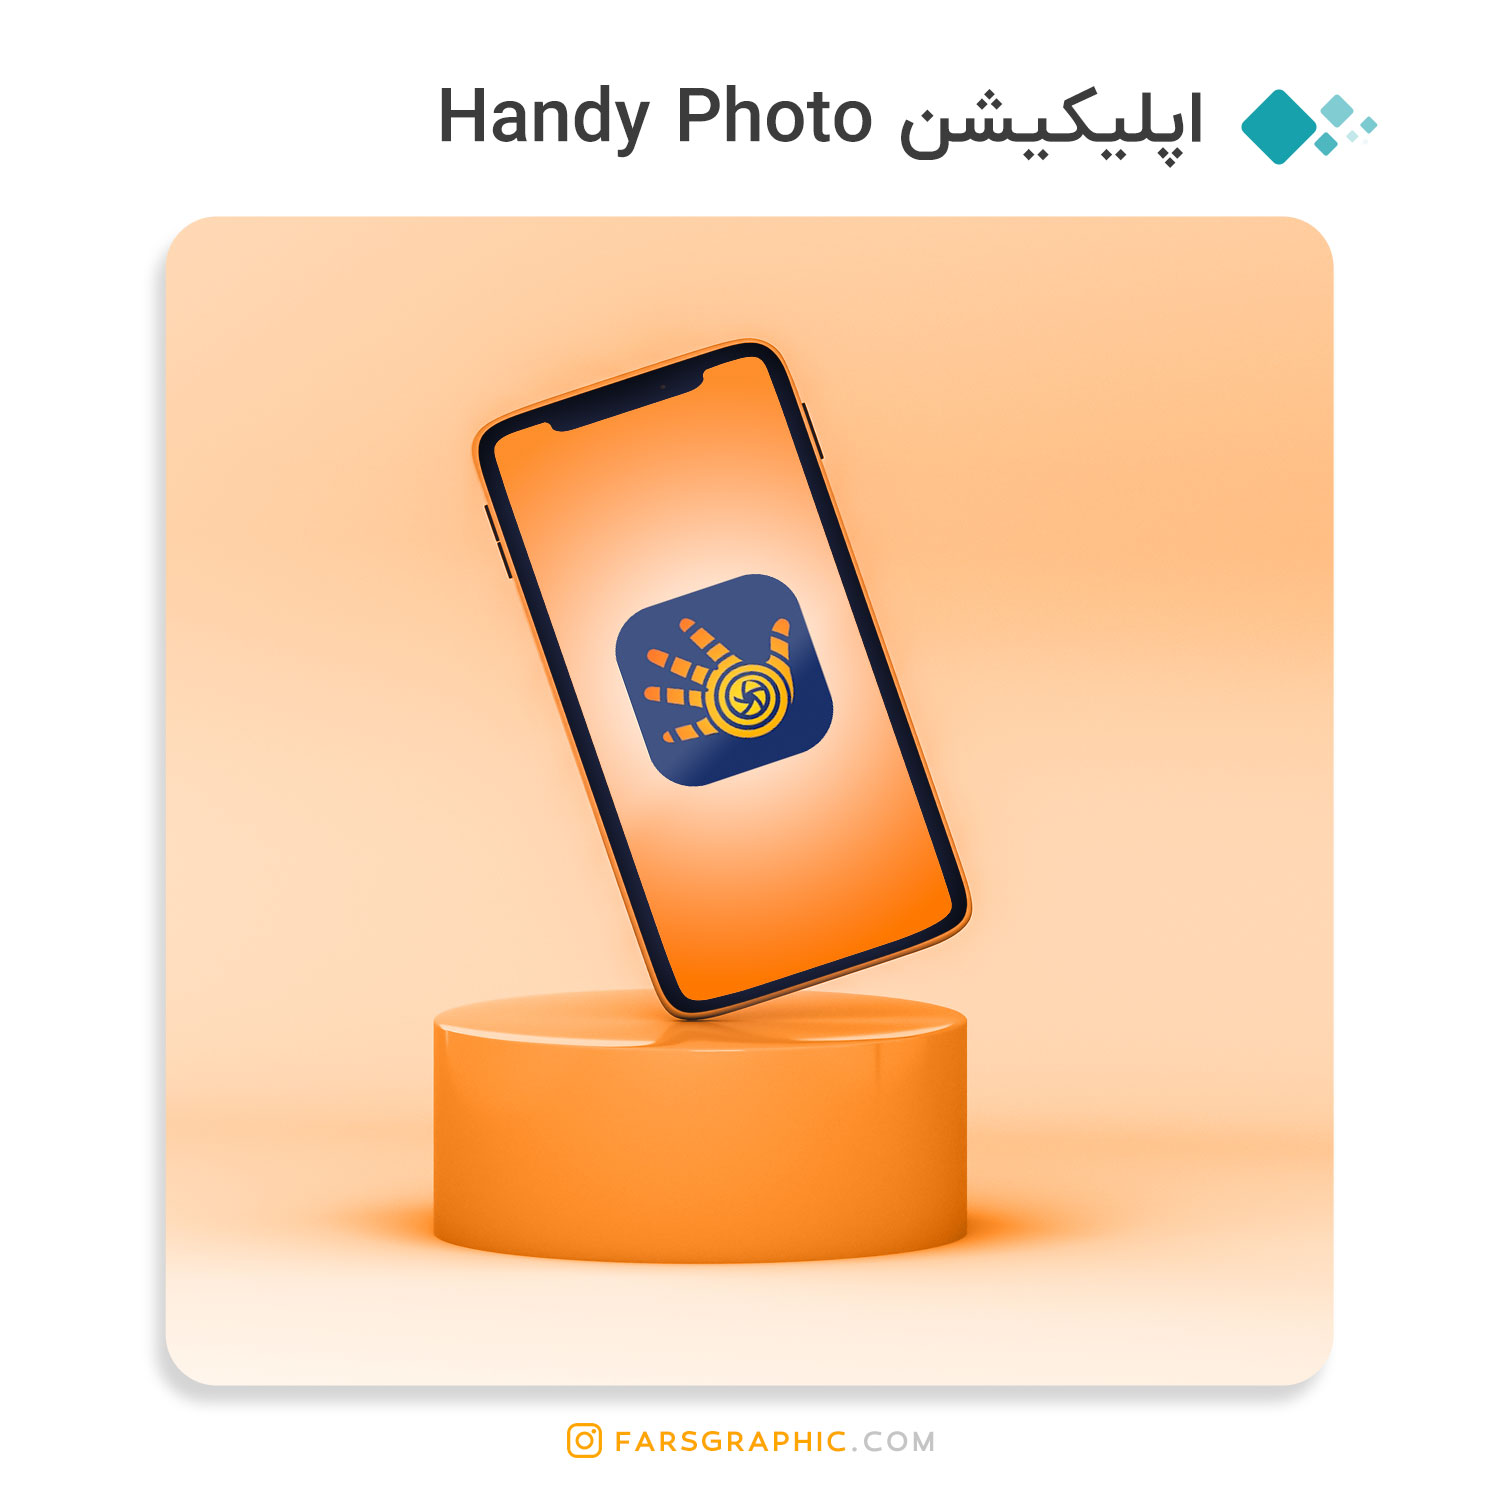 اپلیکیشن Handy Photo